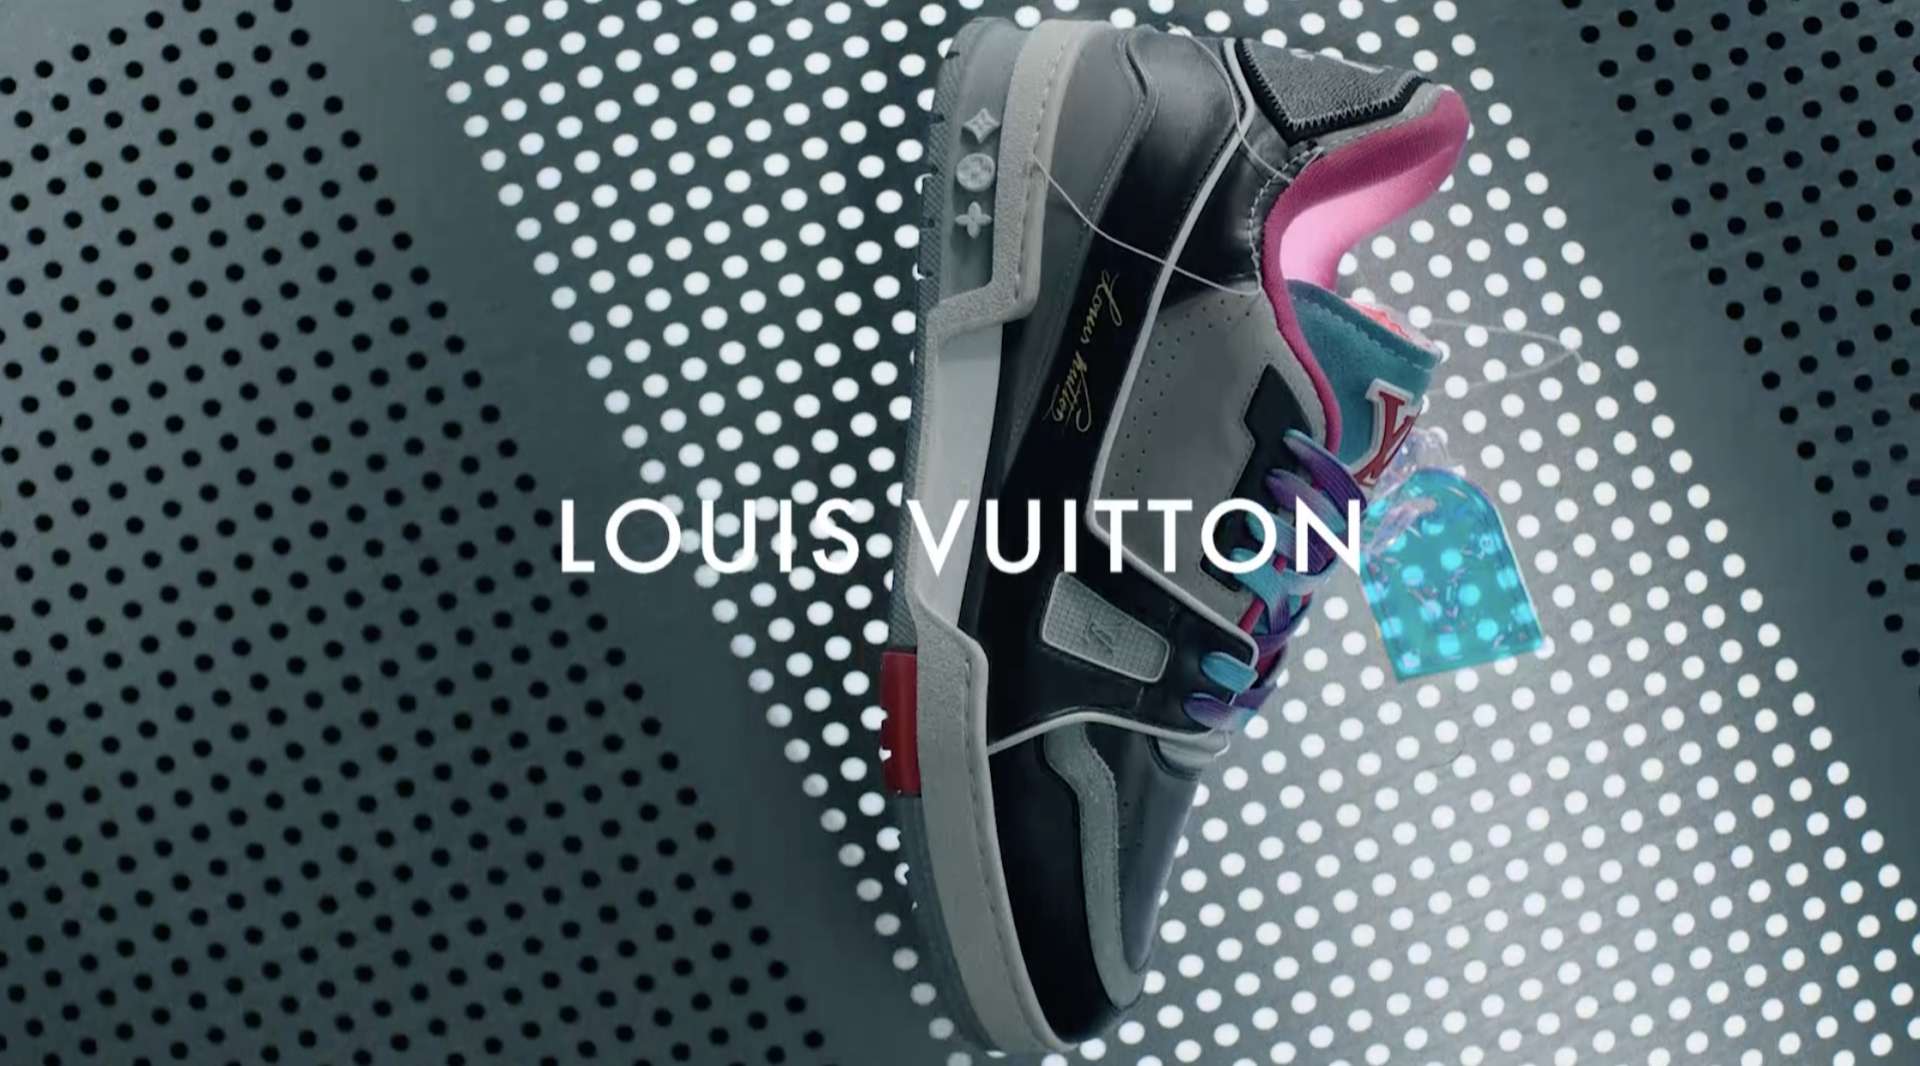 Louis Vuitton [Commercial]